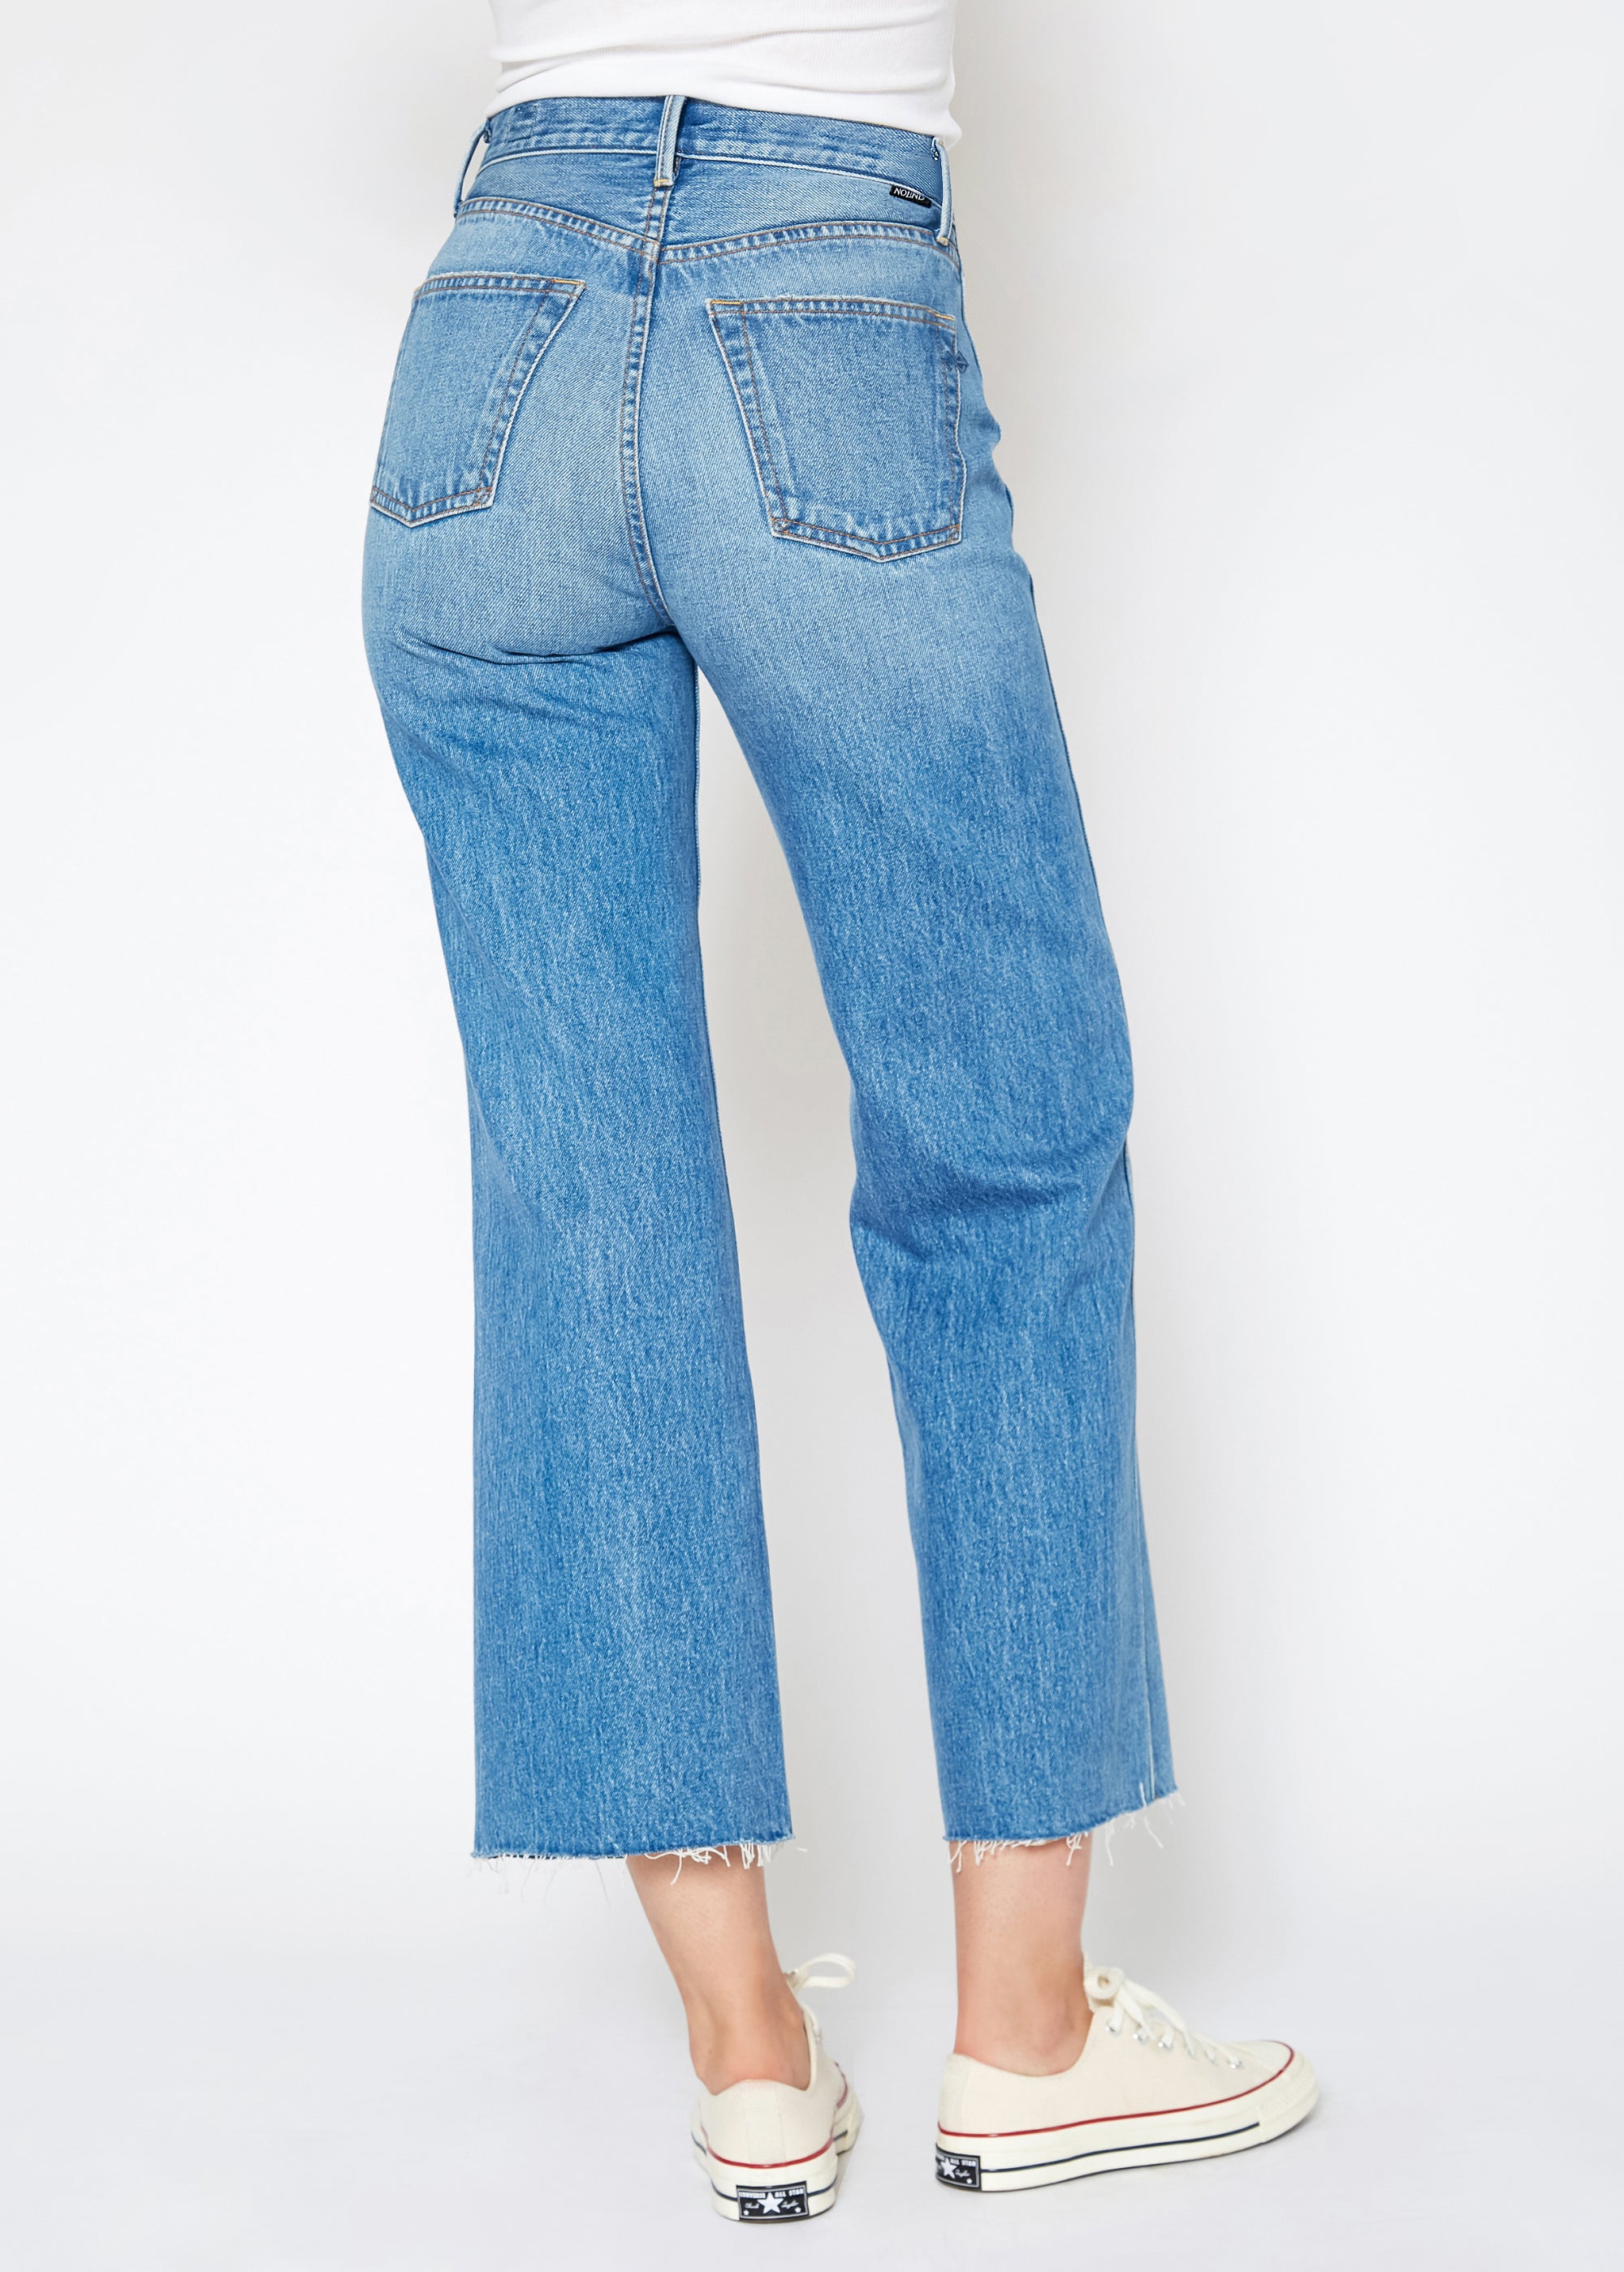 Wide Leg Crop Jeans in Queen - Noend Denim